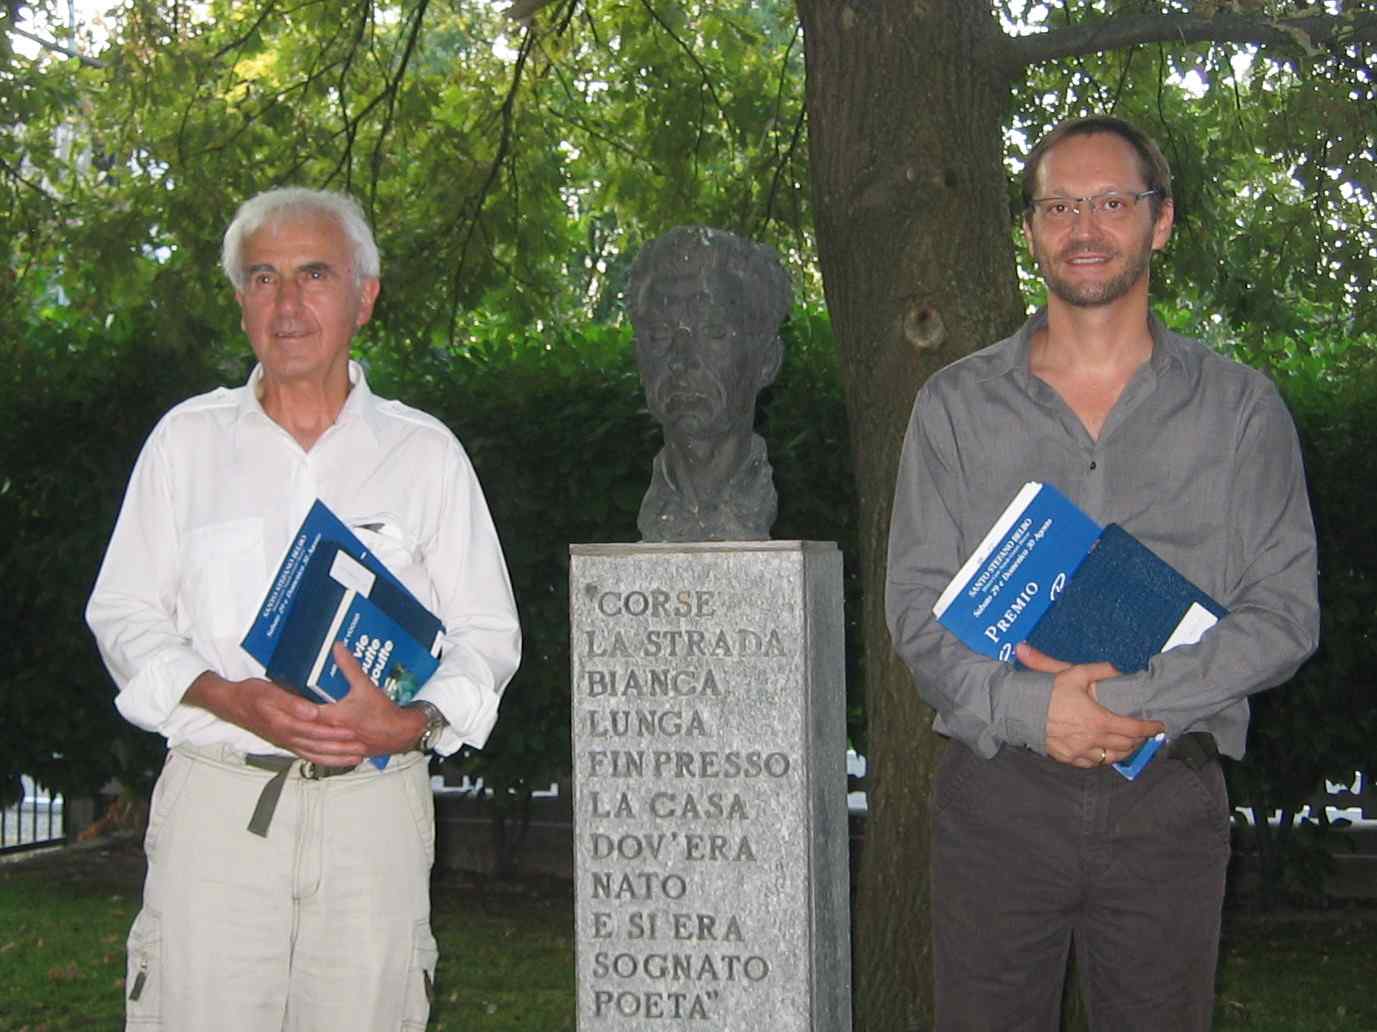 Les Dr Lecoq et Kerempichon, laurats 2009 des prix Cesare Pavese de la nouvelle et de posie.